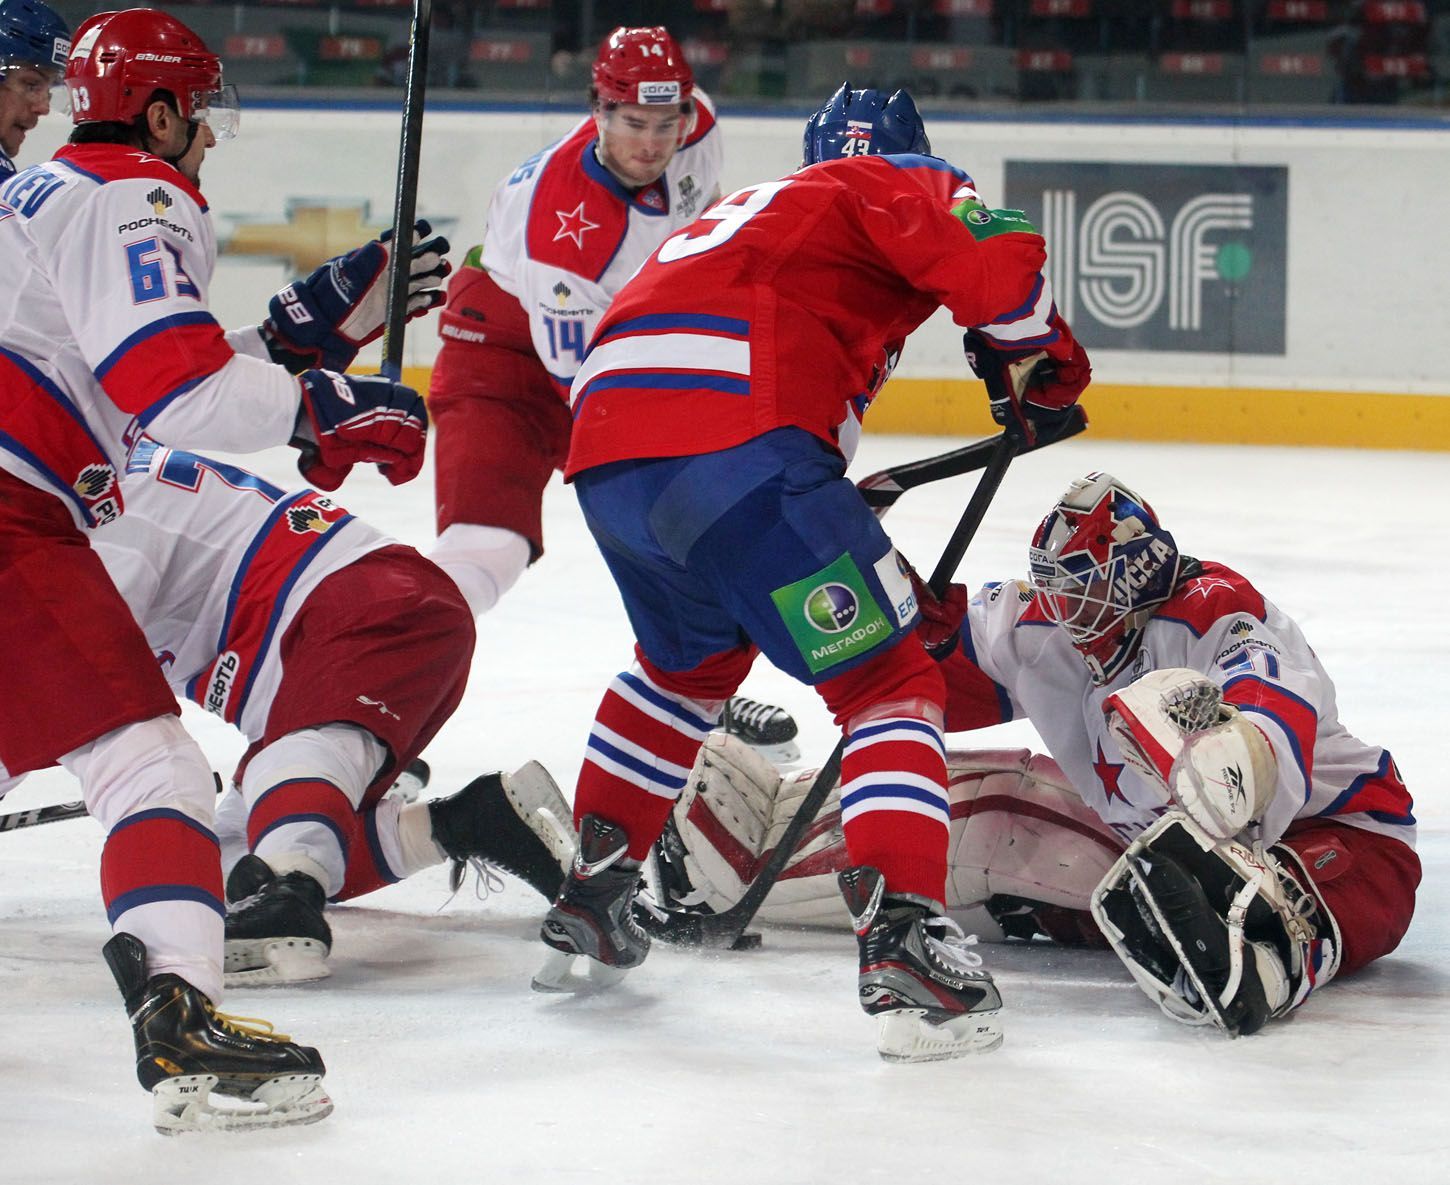 Hokej, KHL, Lev Praha - CSKA Moskva: Tomáš Surový (43)  - Rastislav Staňa